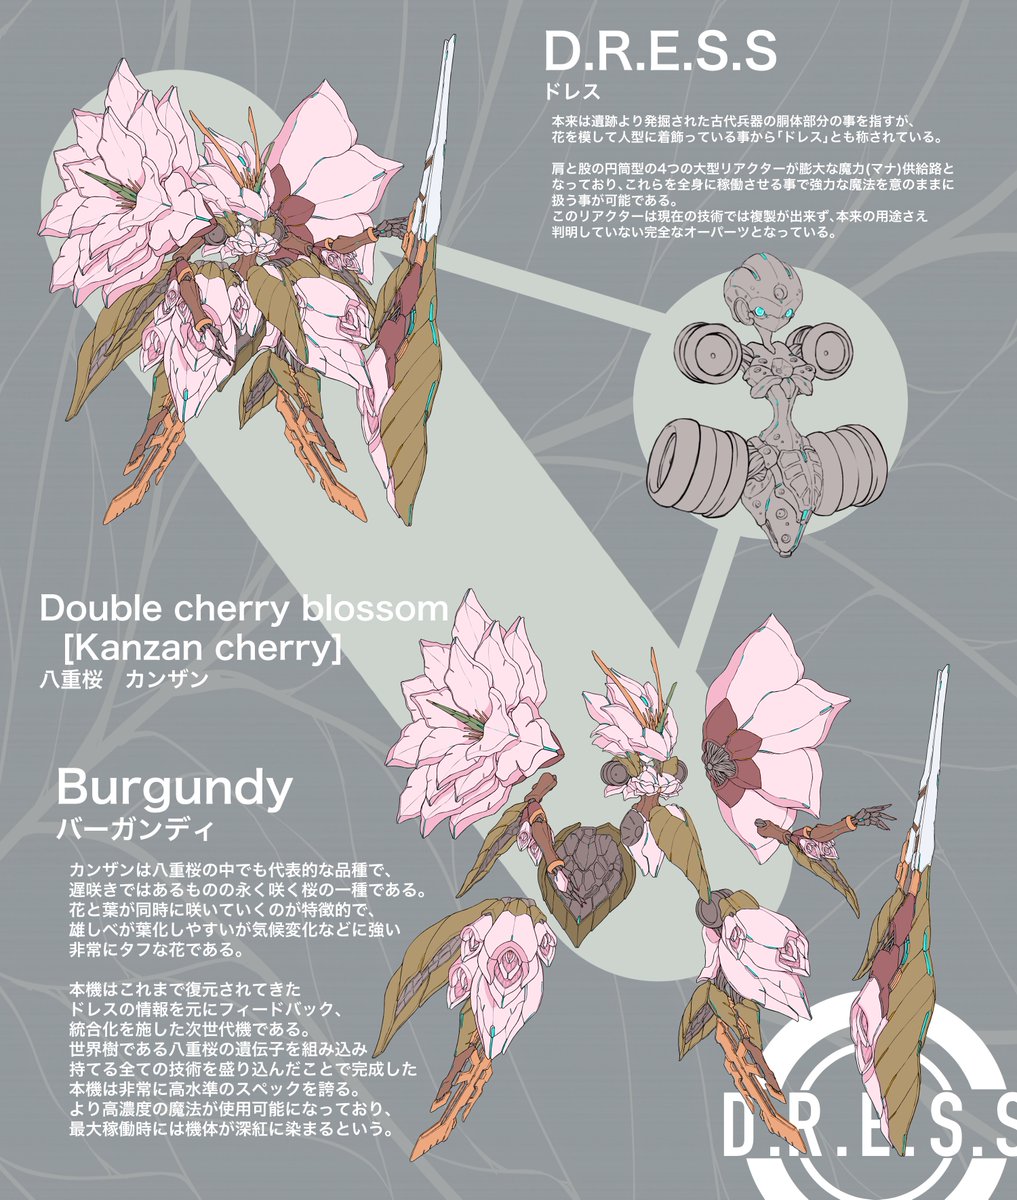 「八重桜 カンザンのお花ロボットを考えた
1月ぶりのお花ロボットです!
実は4月よ」|ぎゅーどん｡/デザイン追求中のイラスト